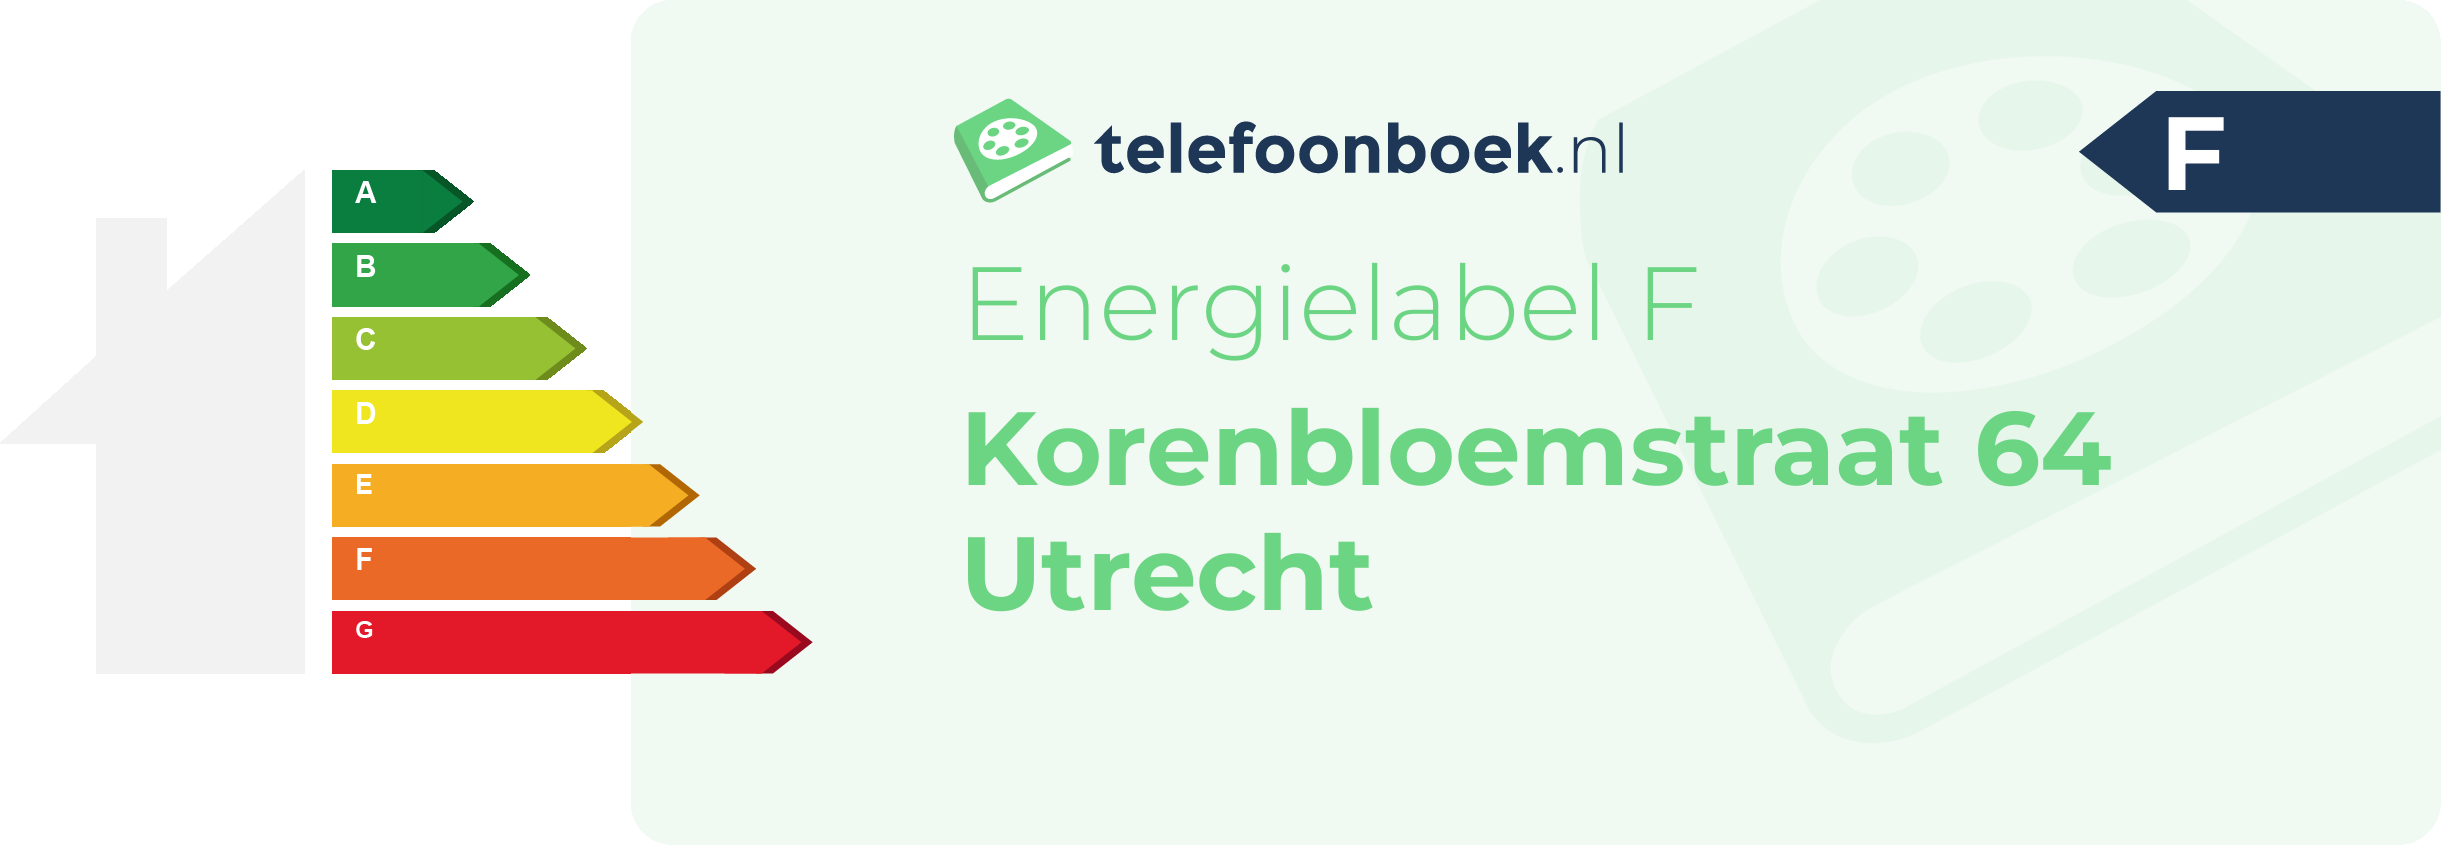 Energielabel Korenbloemstraat 64 Utrecht